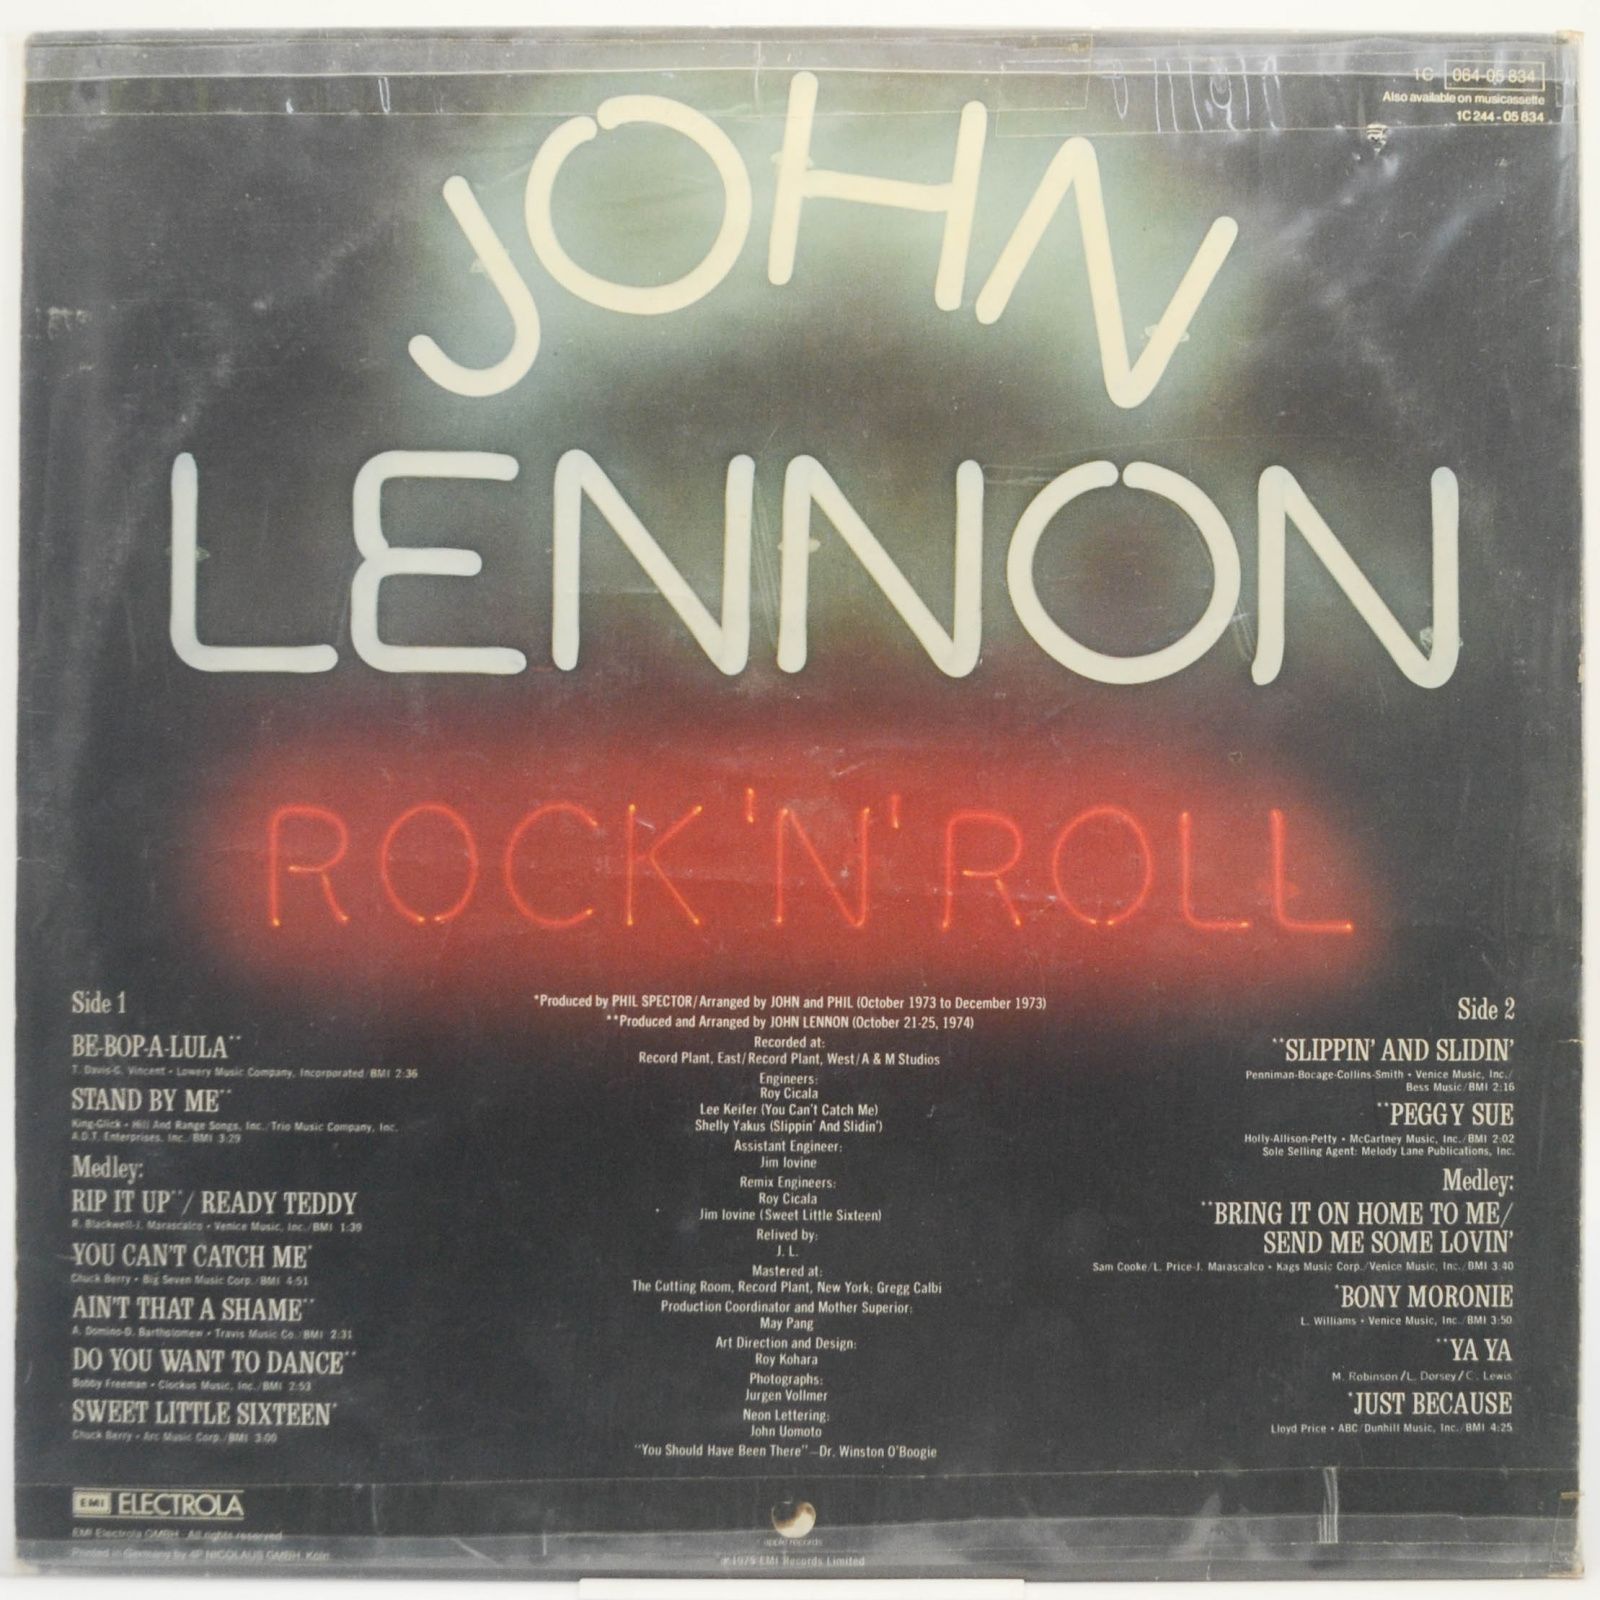 John Lennon — Rock 'N' Roll, 1975